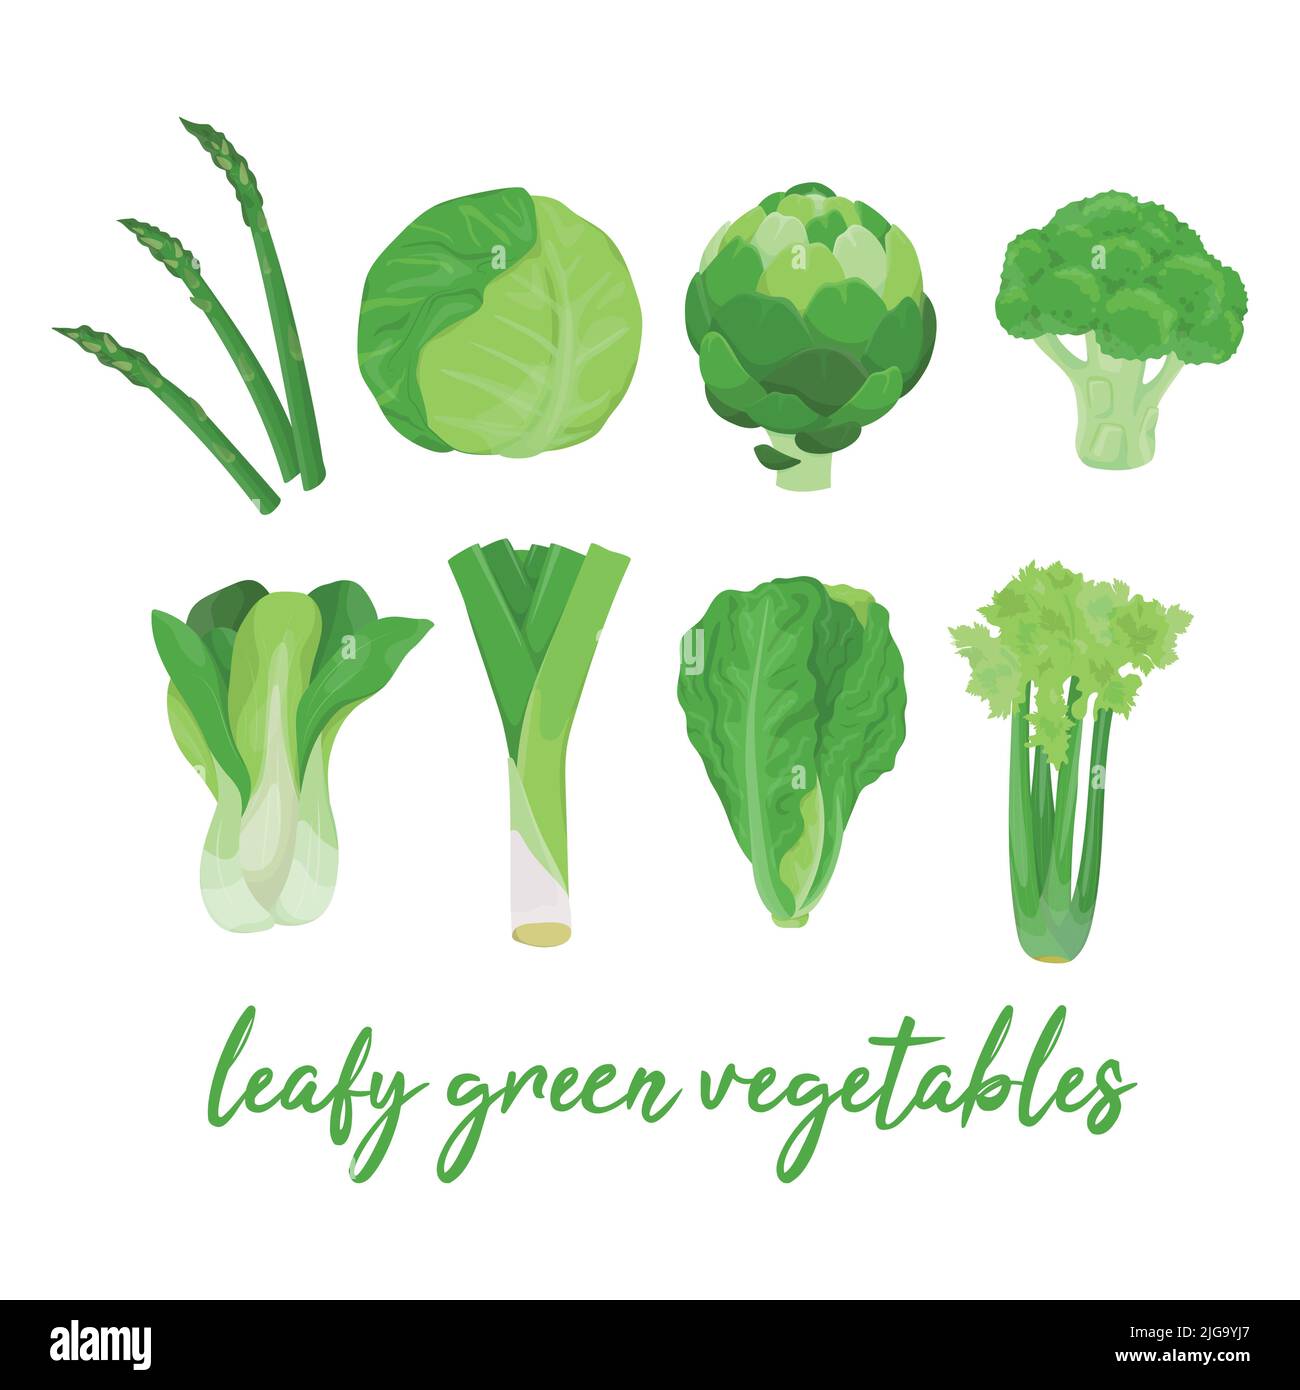 Collection de divers légumes verts à feuilles colorés dessinés à la main, isolés sur un fond blanc. Illustration de Vecteur